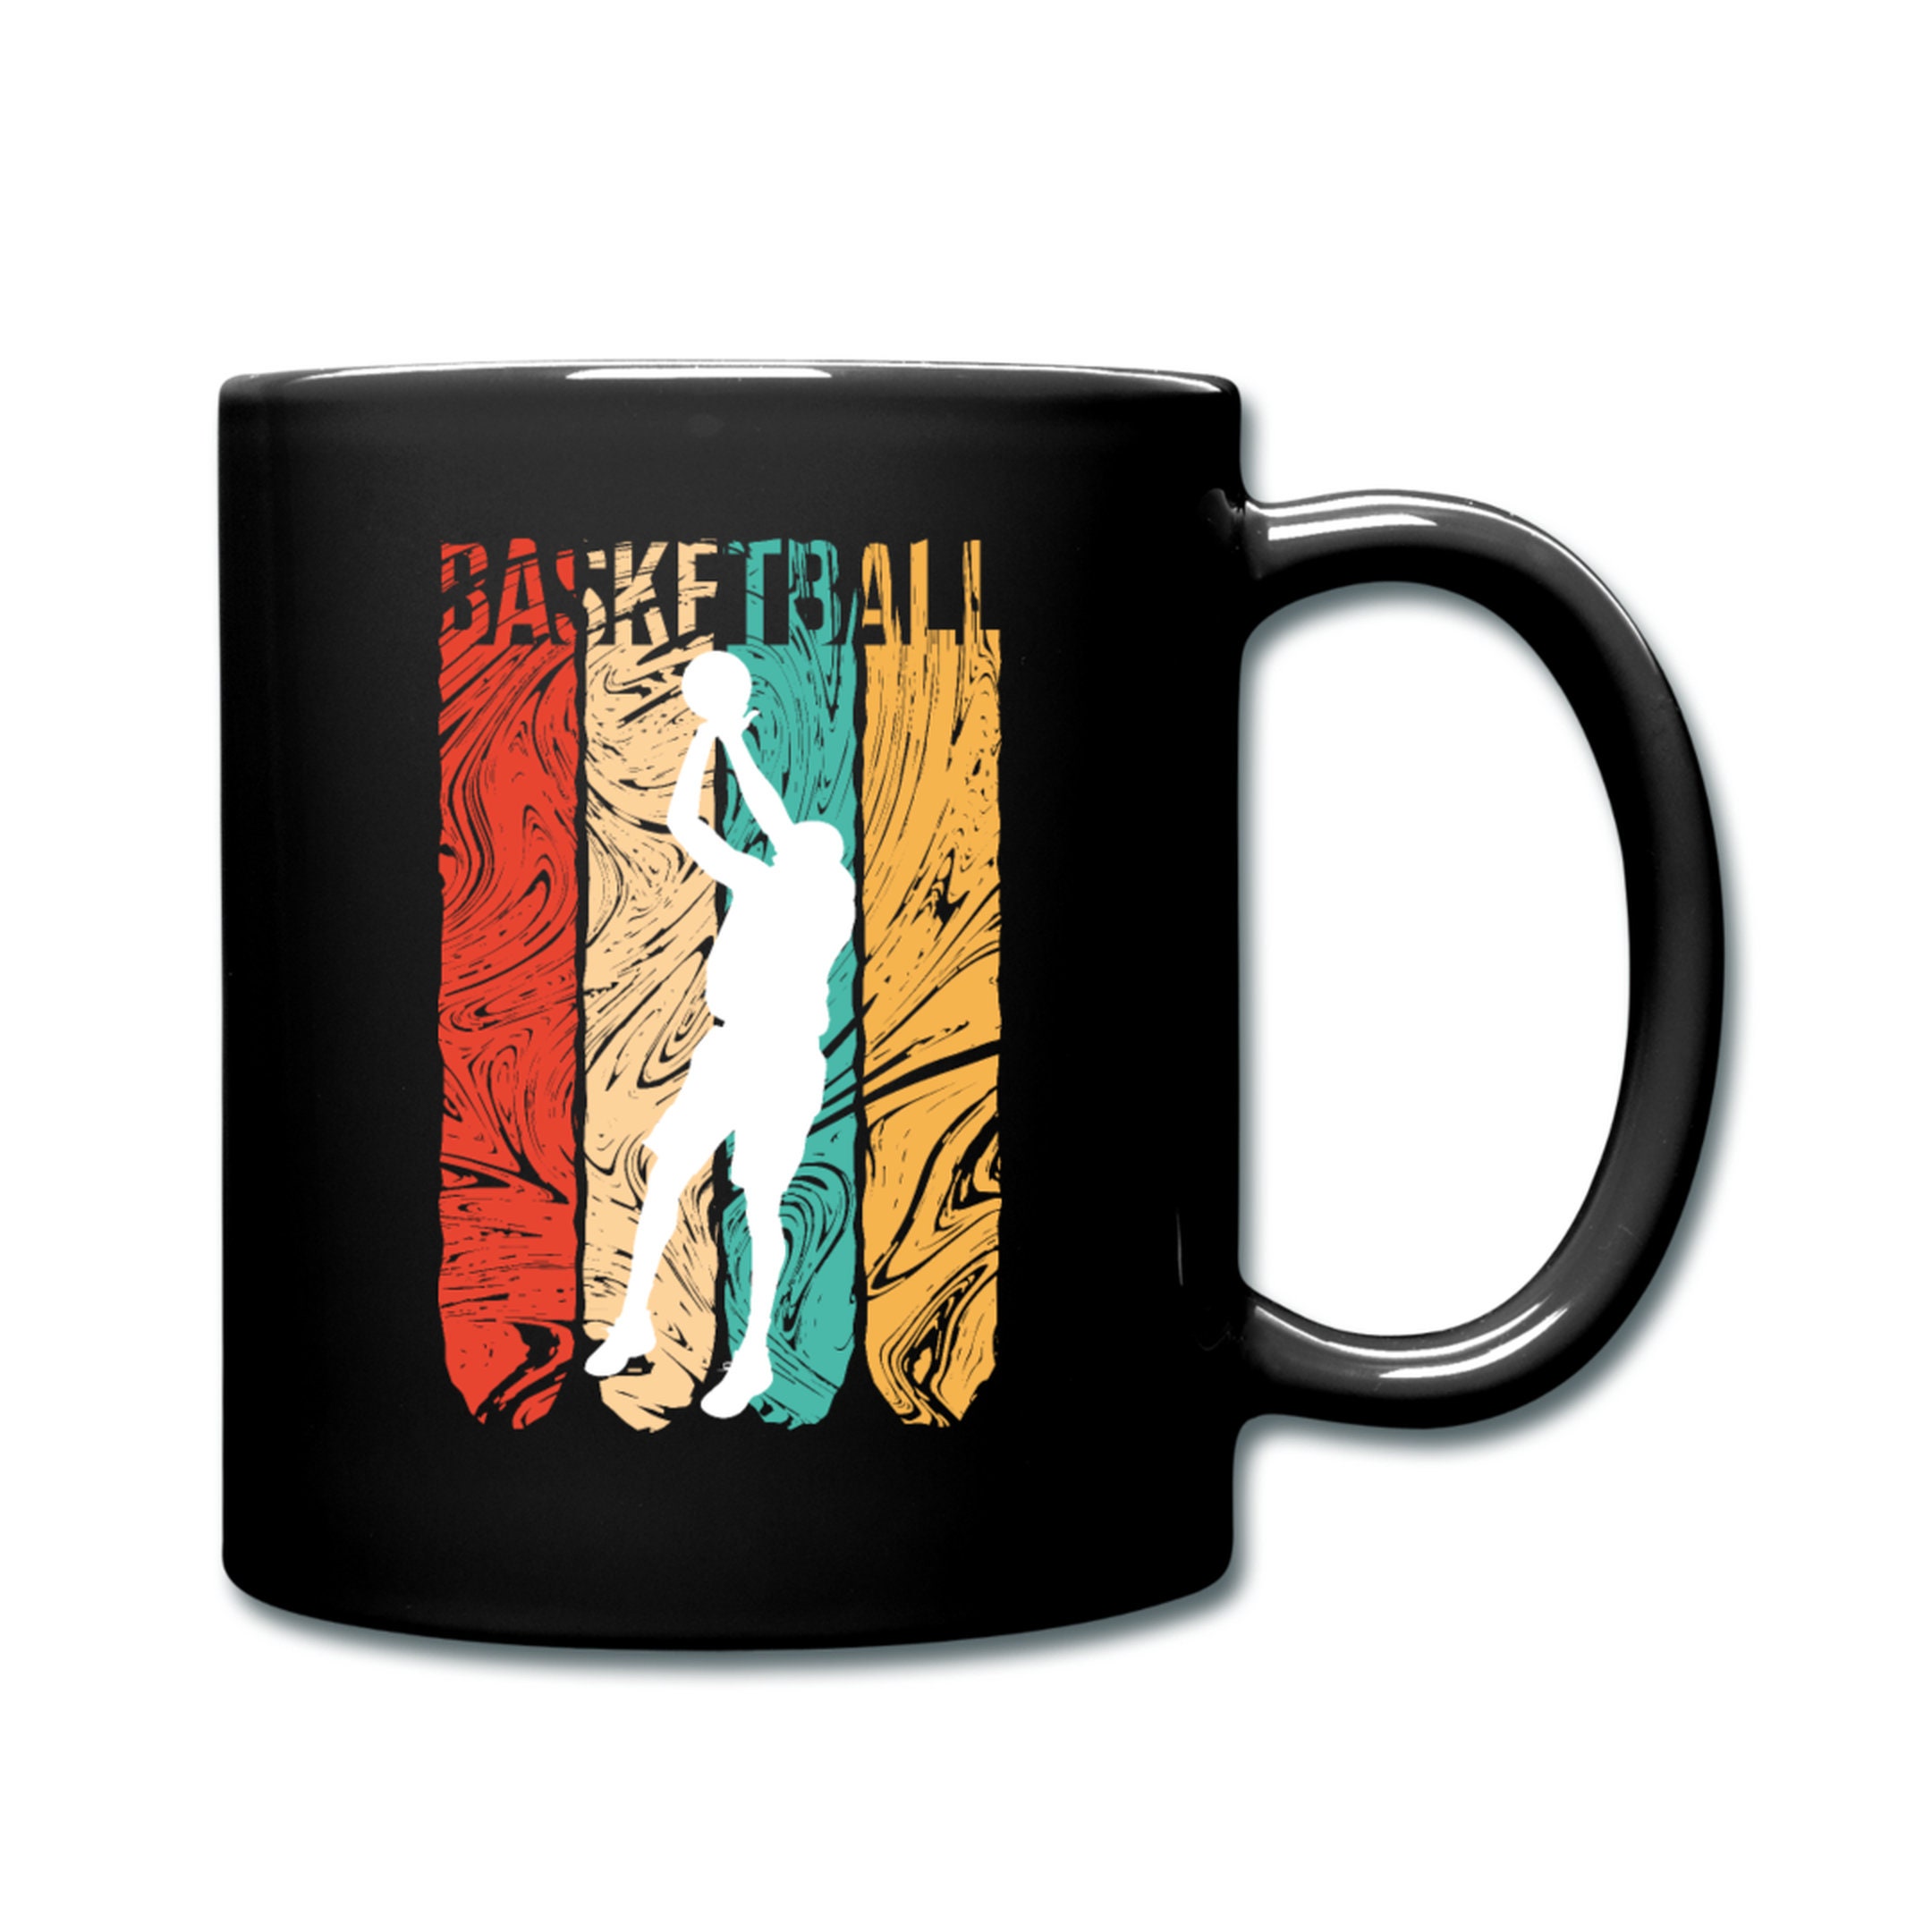 Discover Basketball Mug, Basketball Gift, Funny Basketball Mug